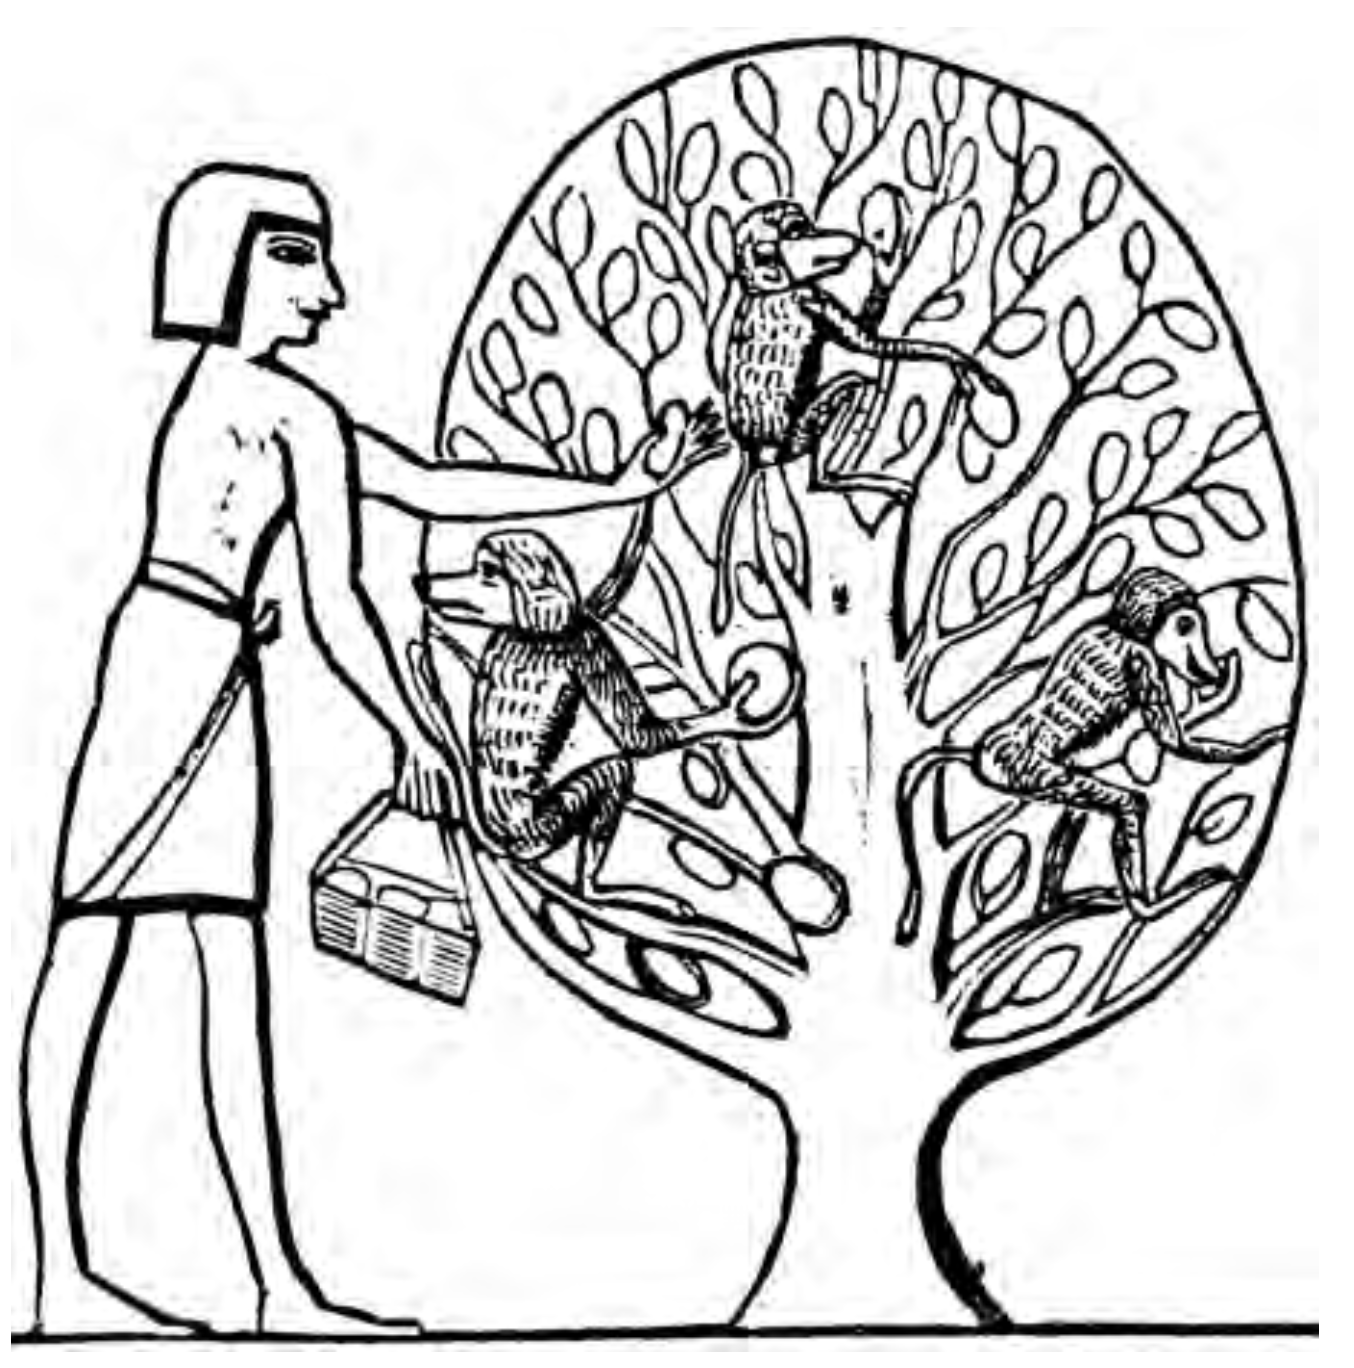 La fruta, los monos y la civilización egipcia